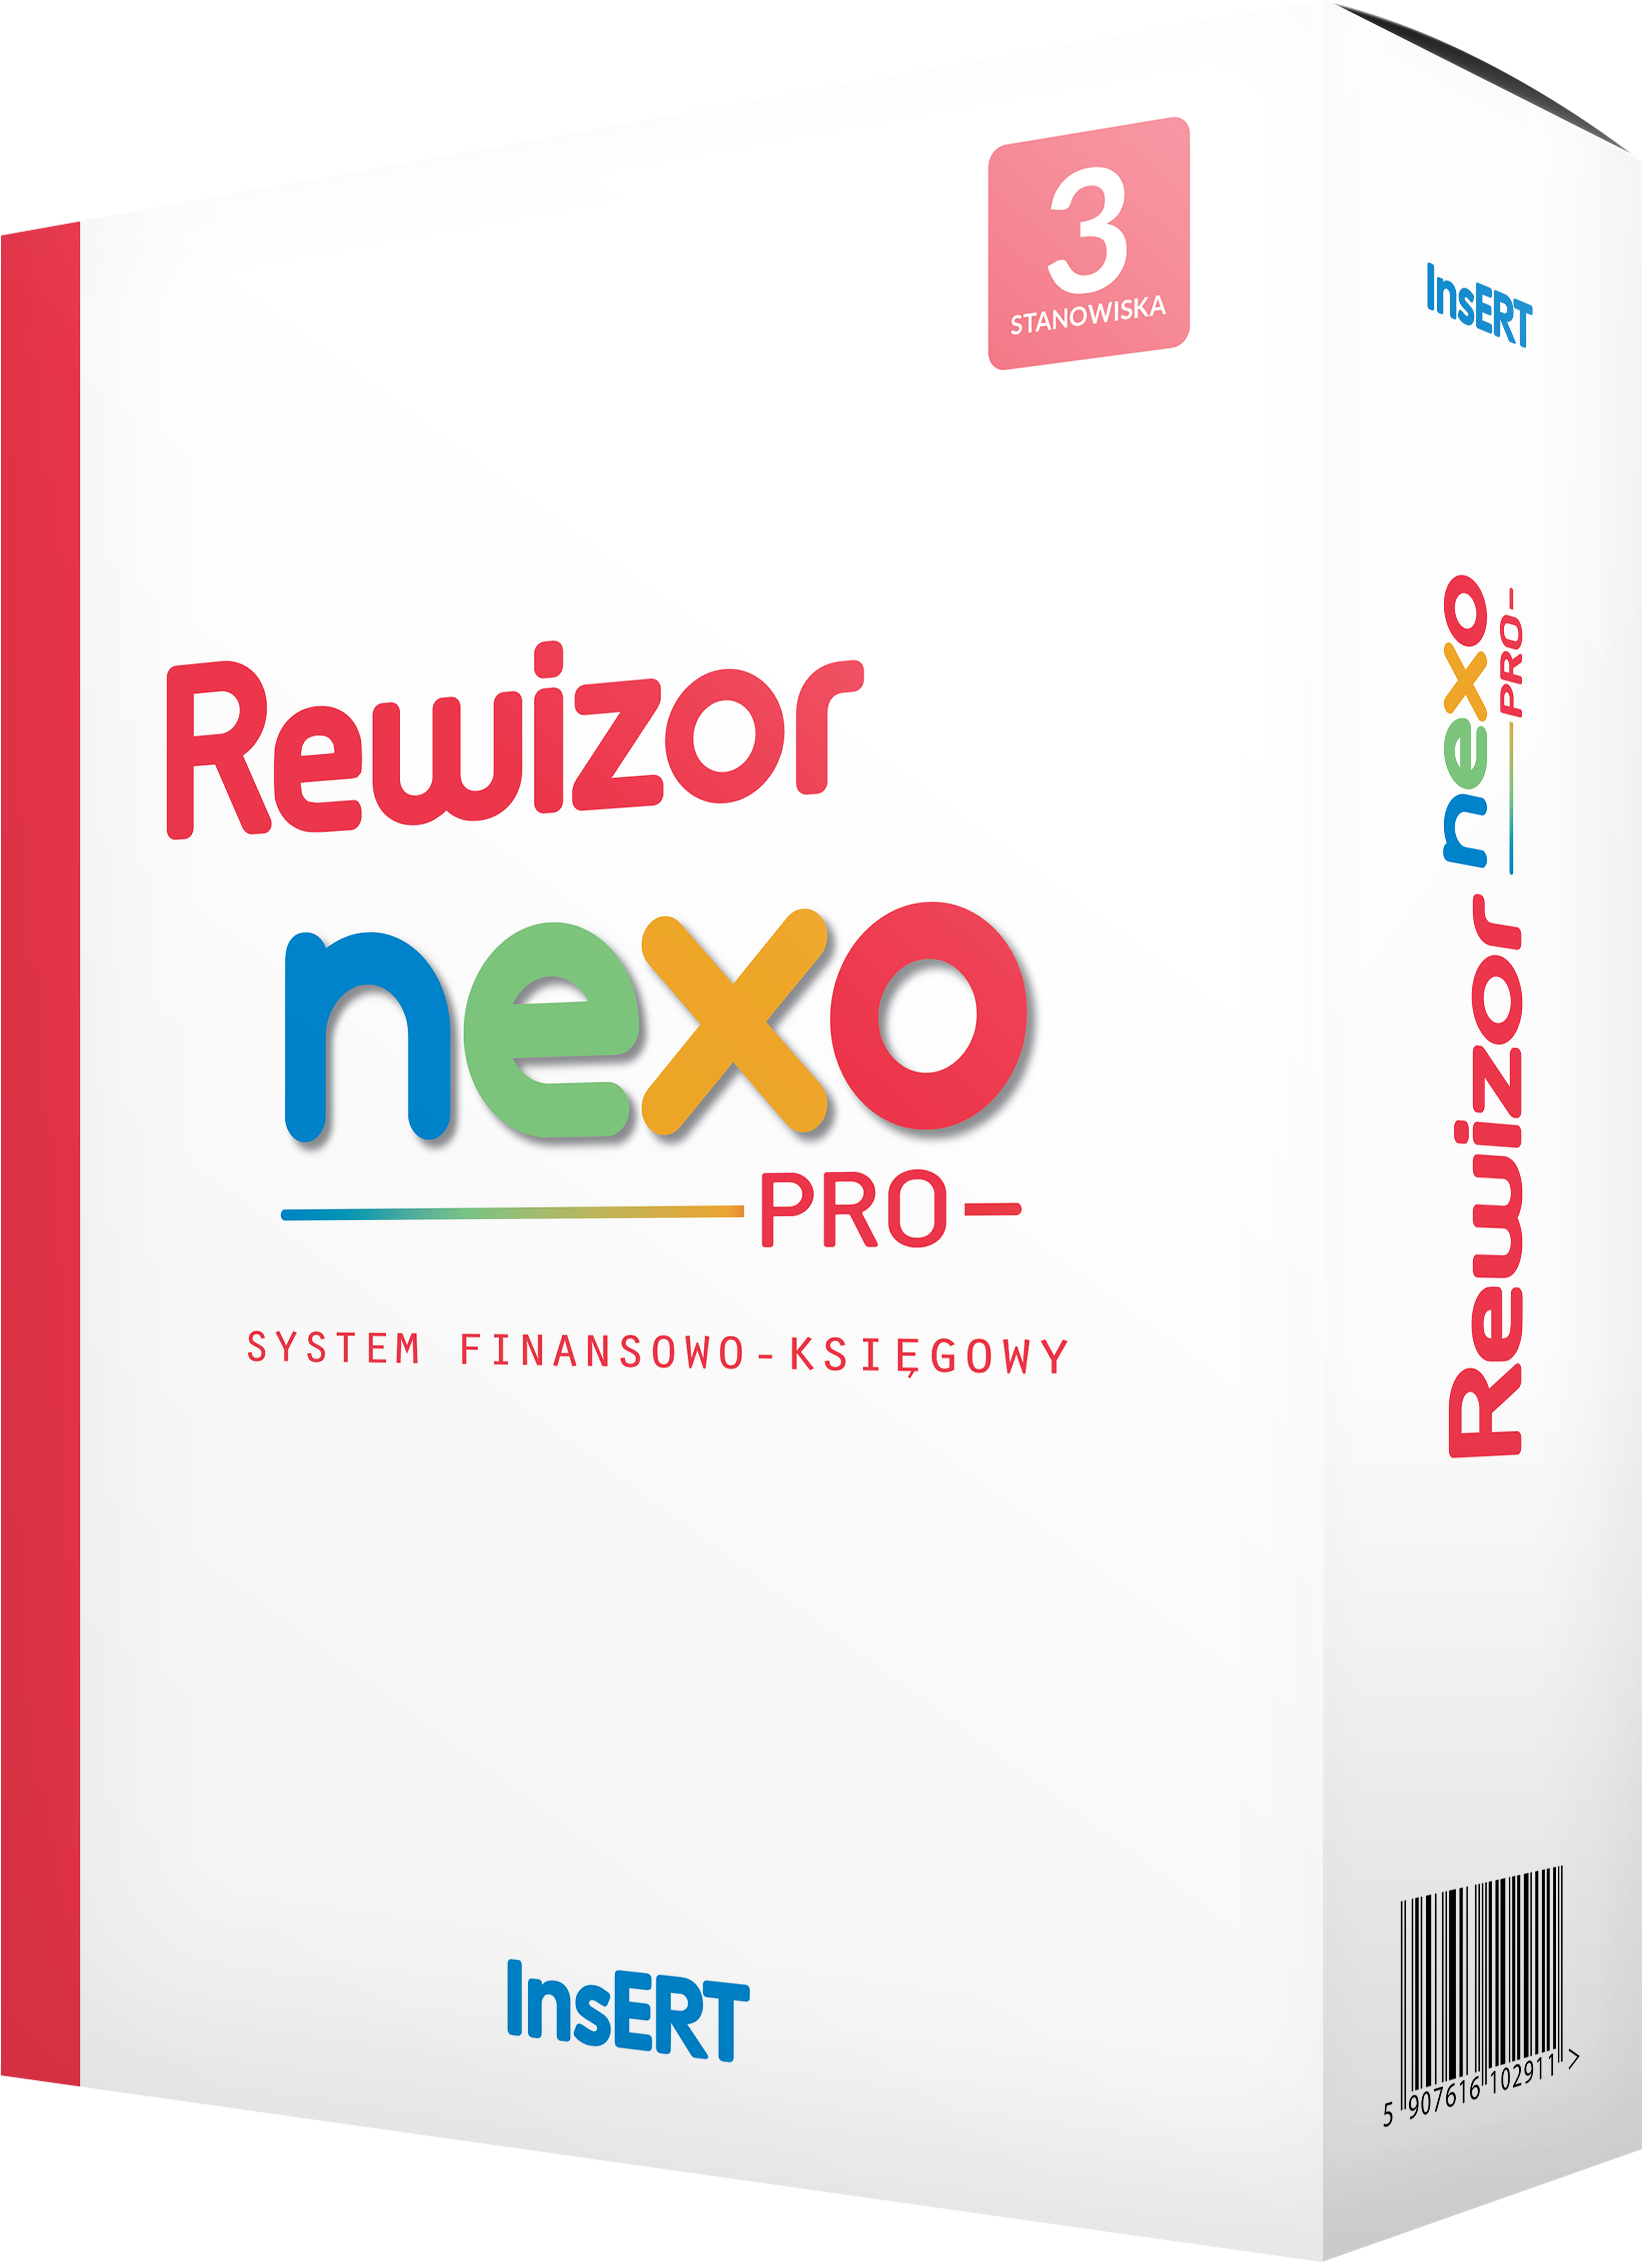 Abonament Rewizor nexo PRO do 3 stanowisk Cena Specjalna